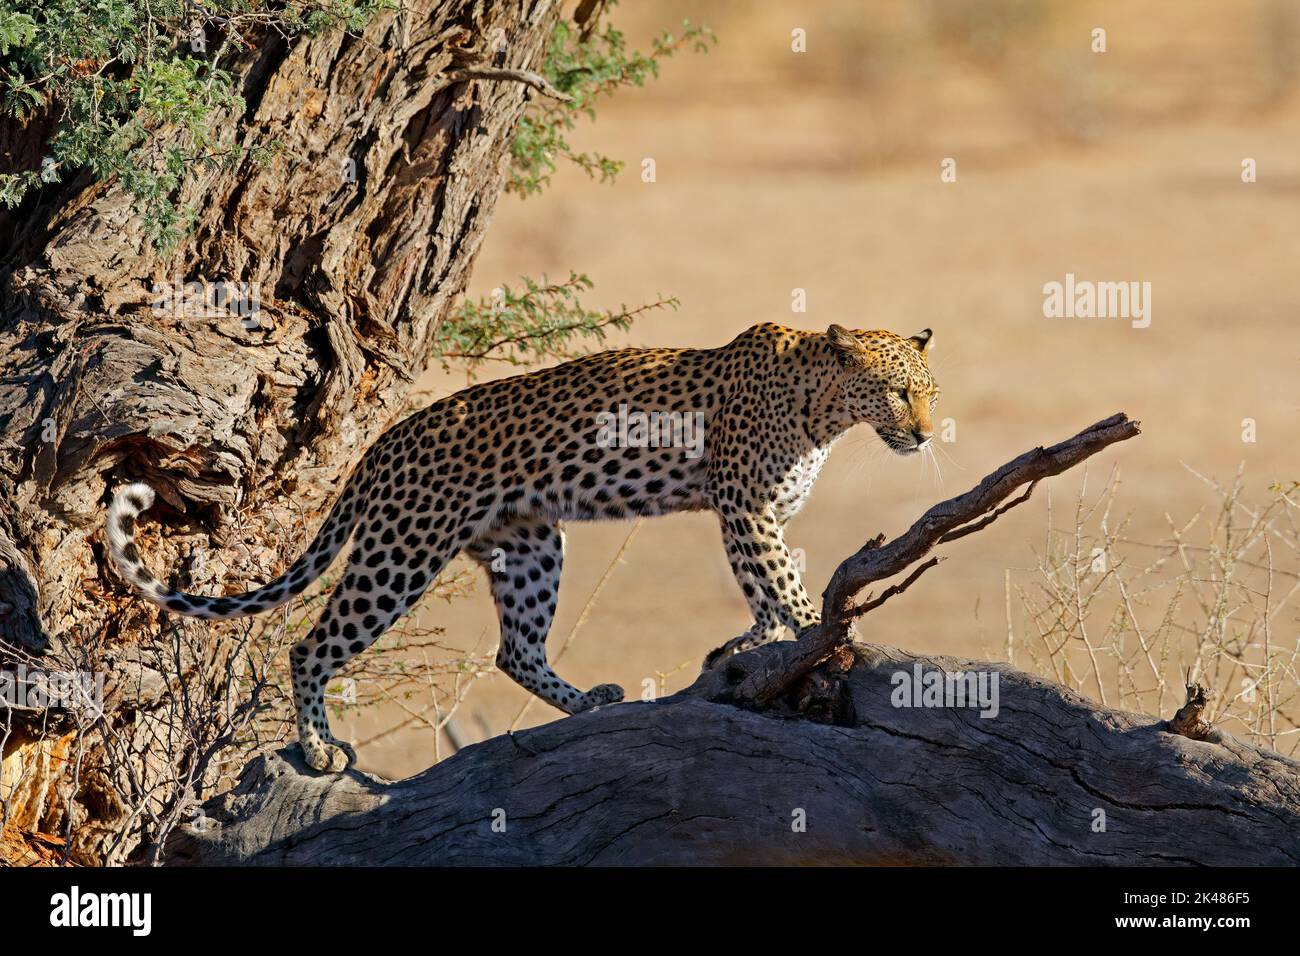 A leopard (Panthera pardus) in a tree, Kalahari desert, South Africa Stock Photo